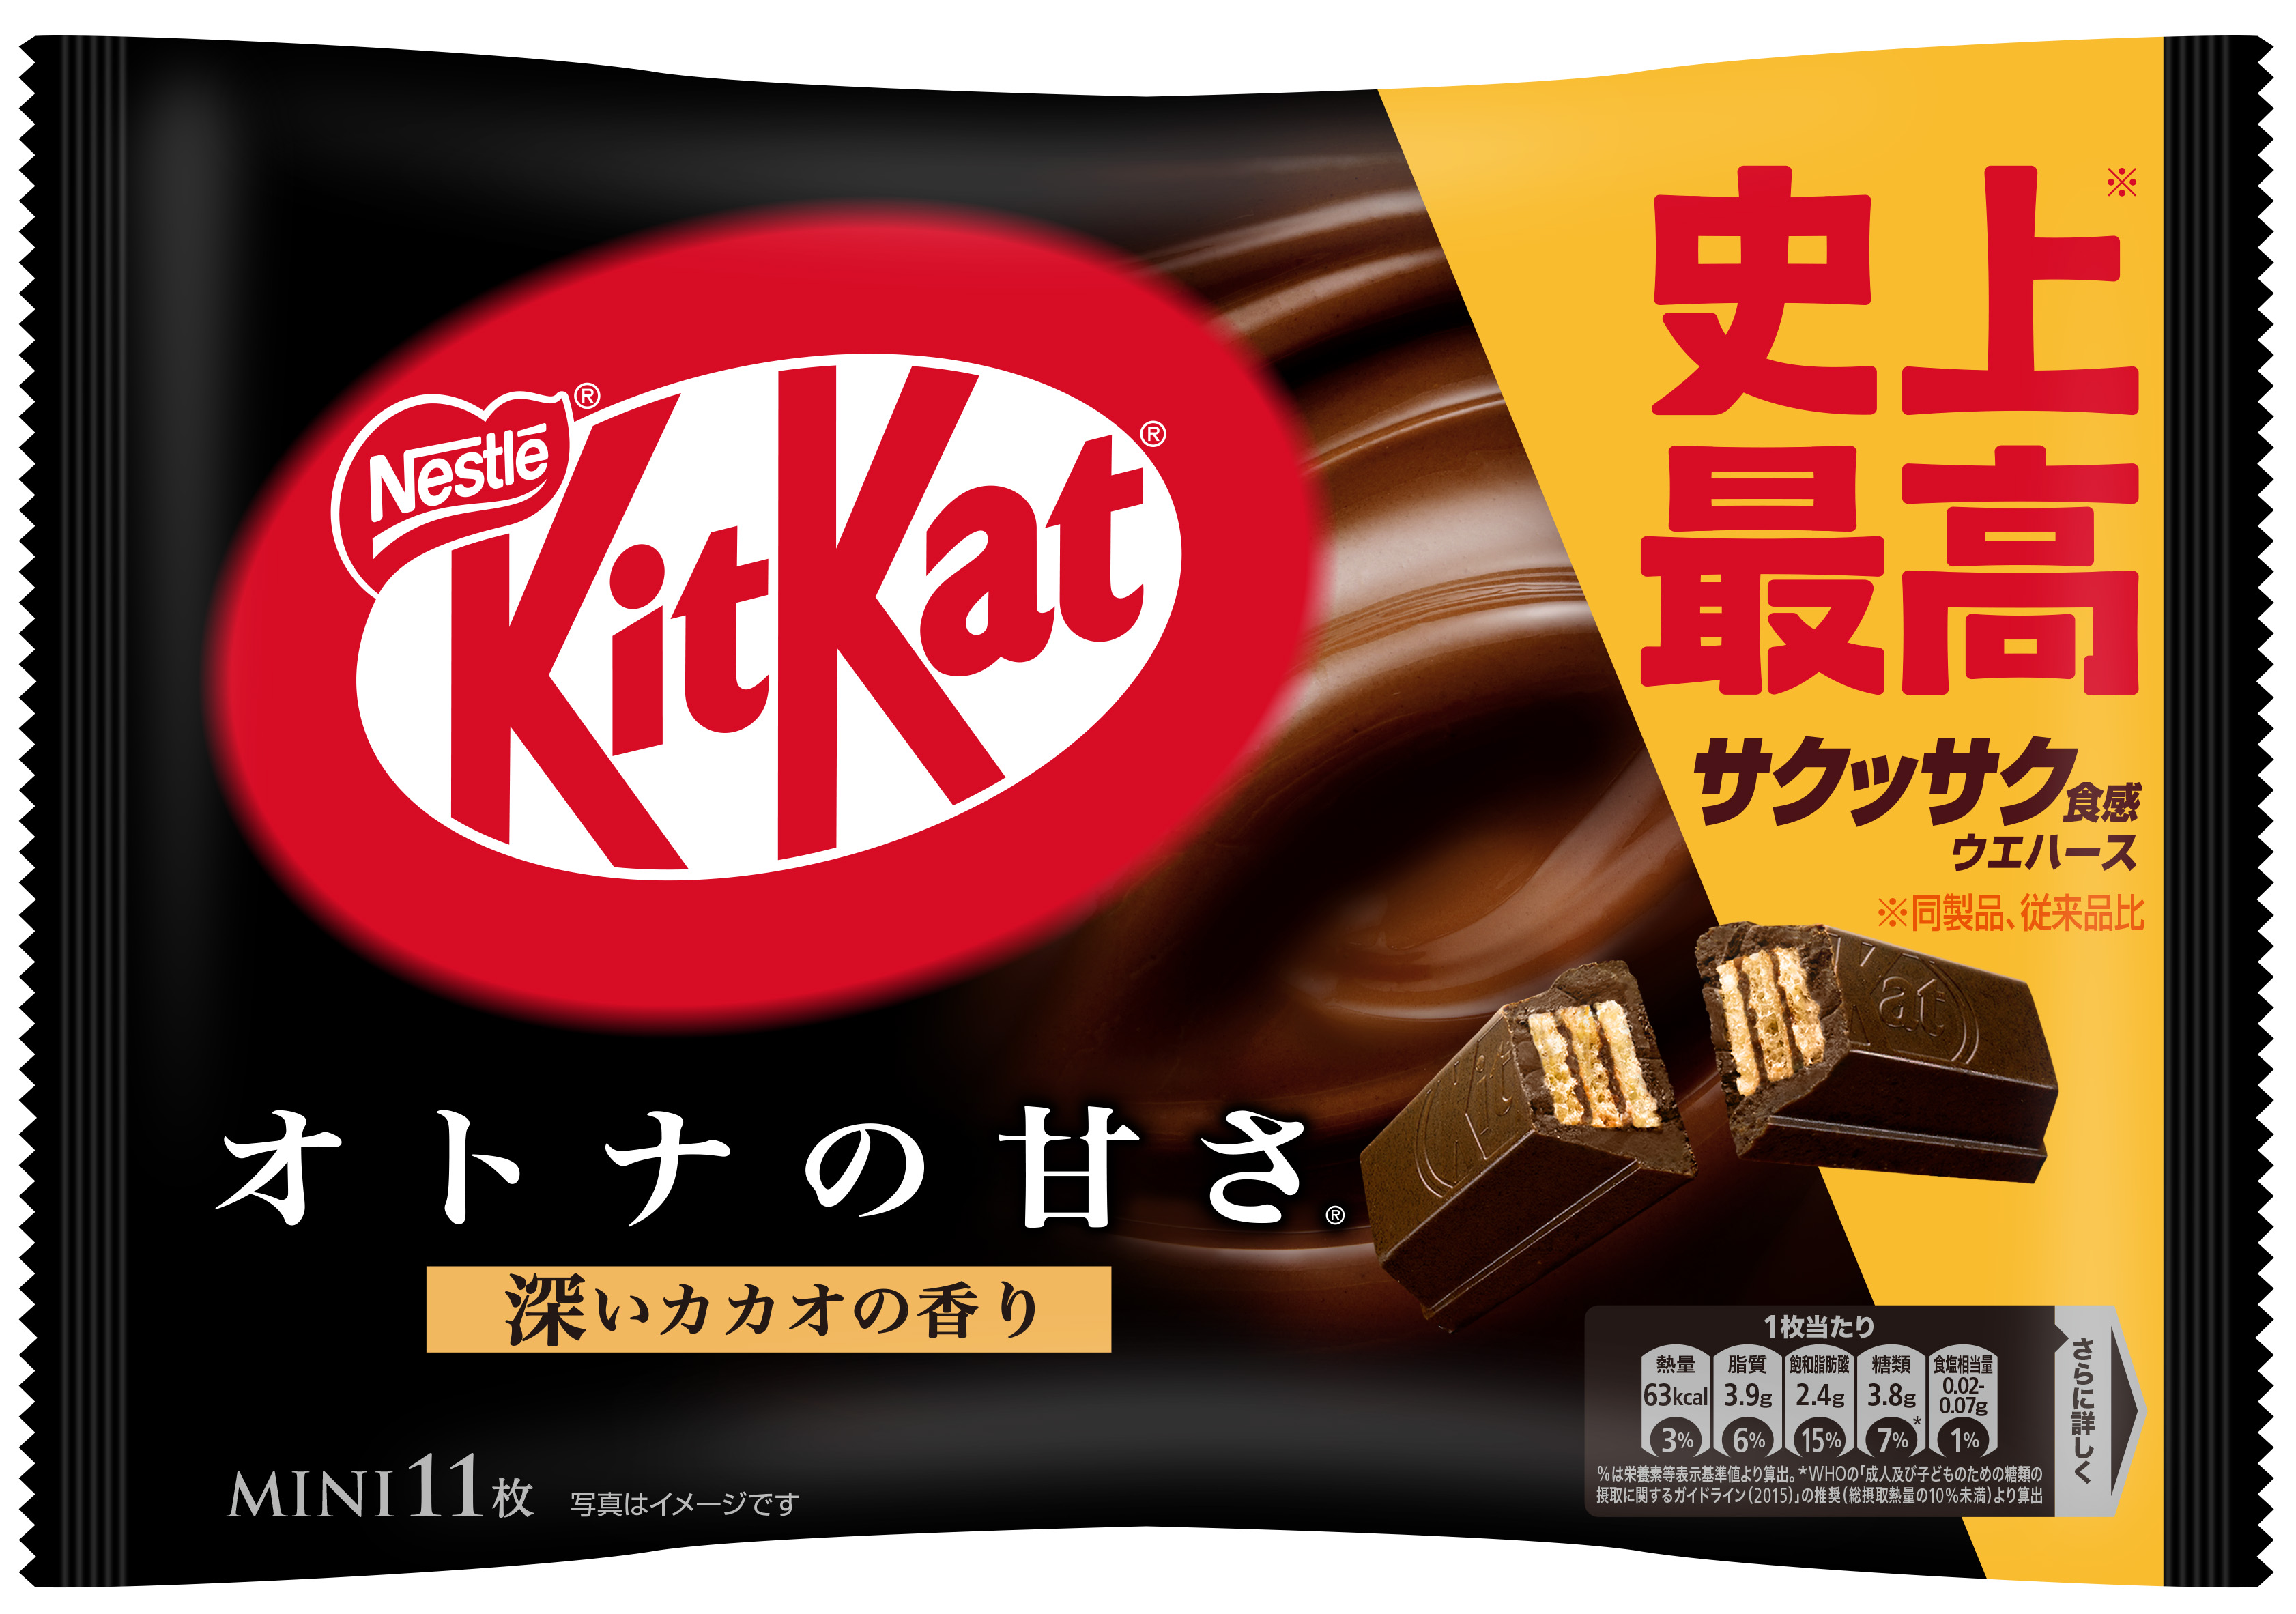 11枚 キットカット ミニ オトナの甘さ | ネスレ日本 製品情報サイト